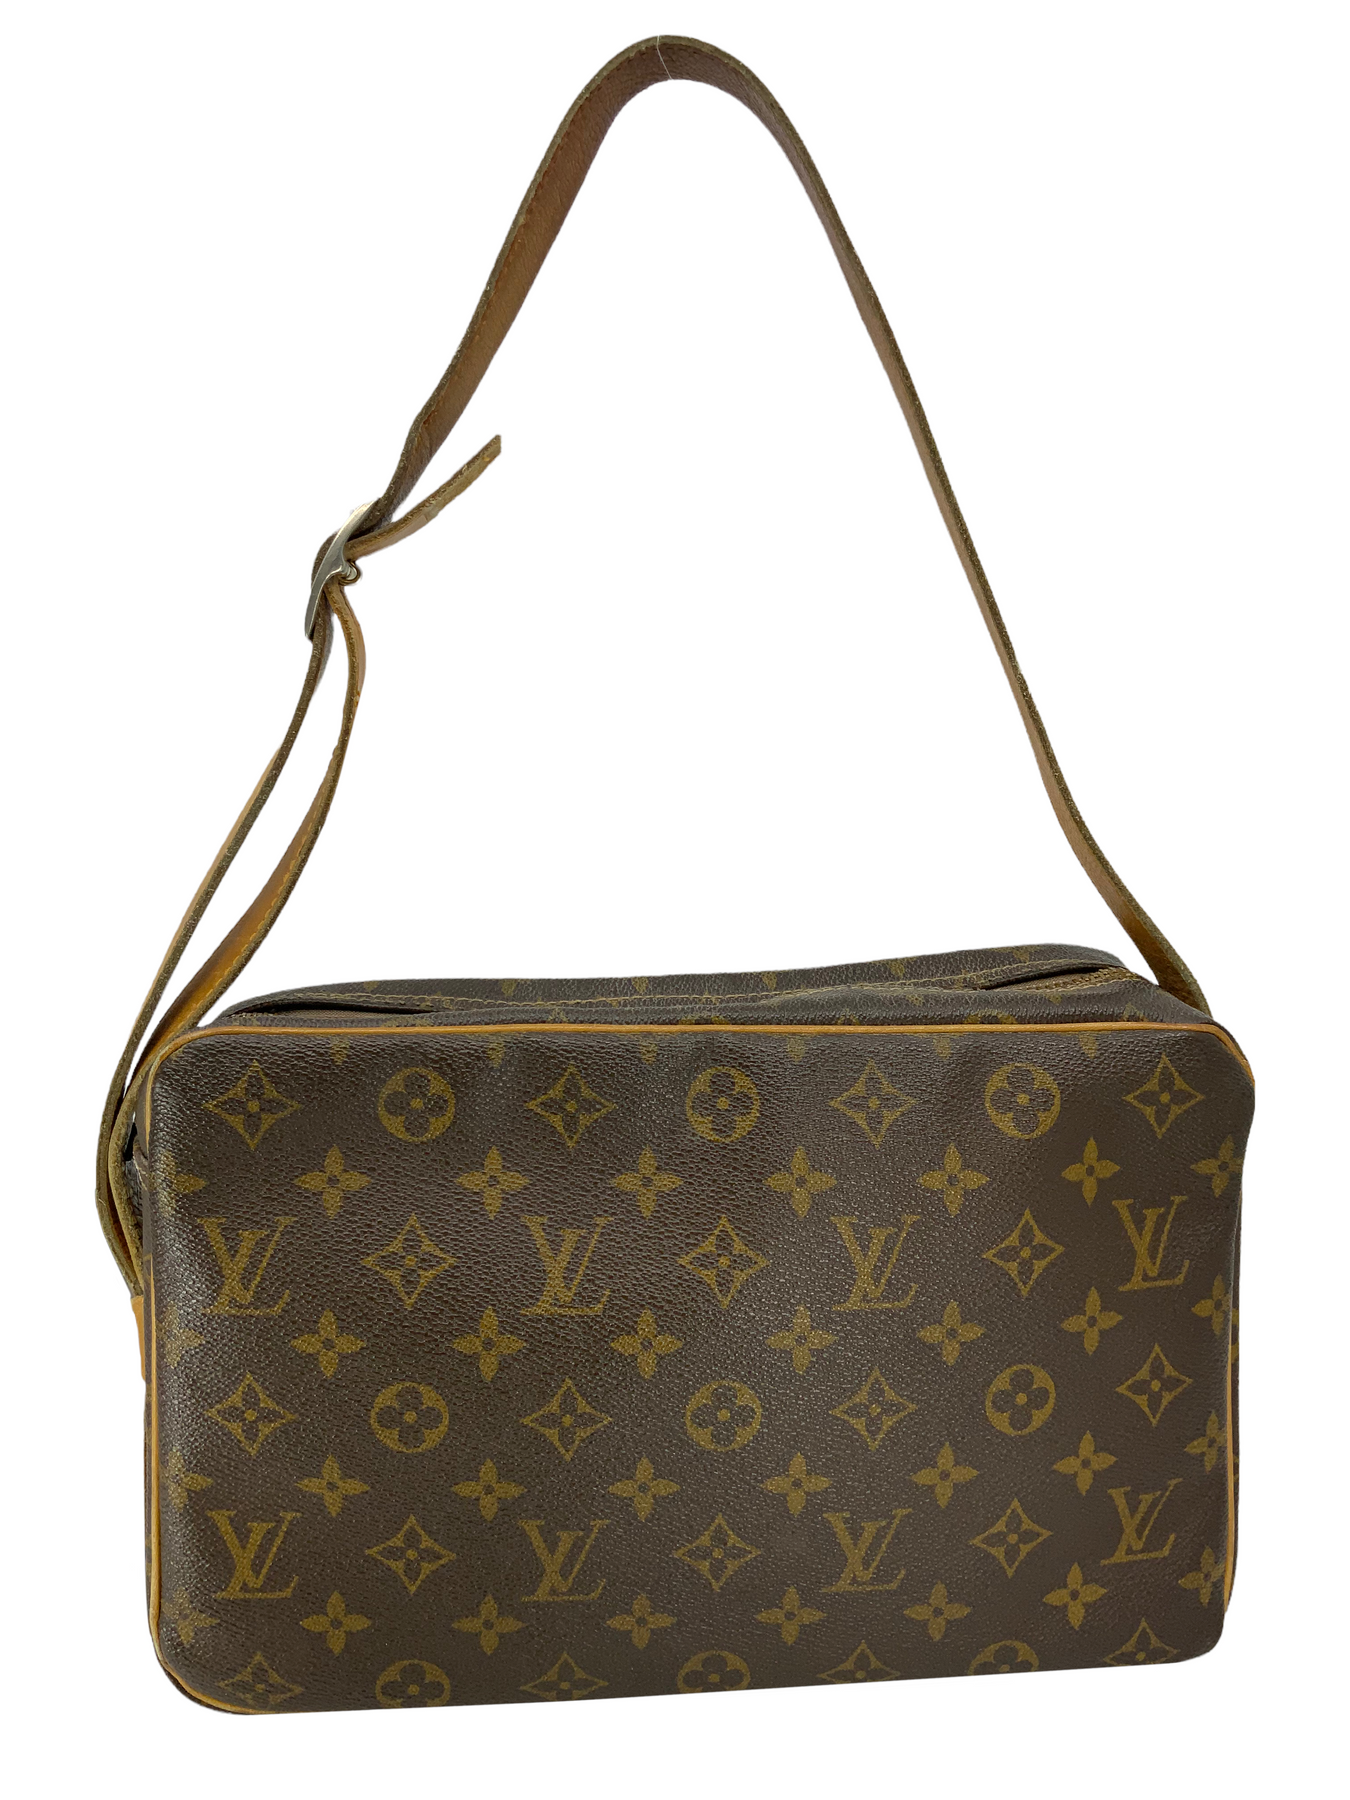 Louis Vuitton, Bags, Louis Vuitton Vintage Authentic Sac Bandouliere